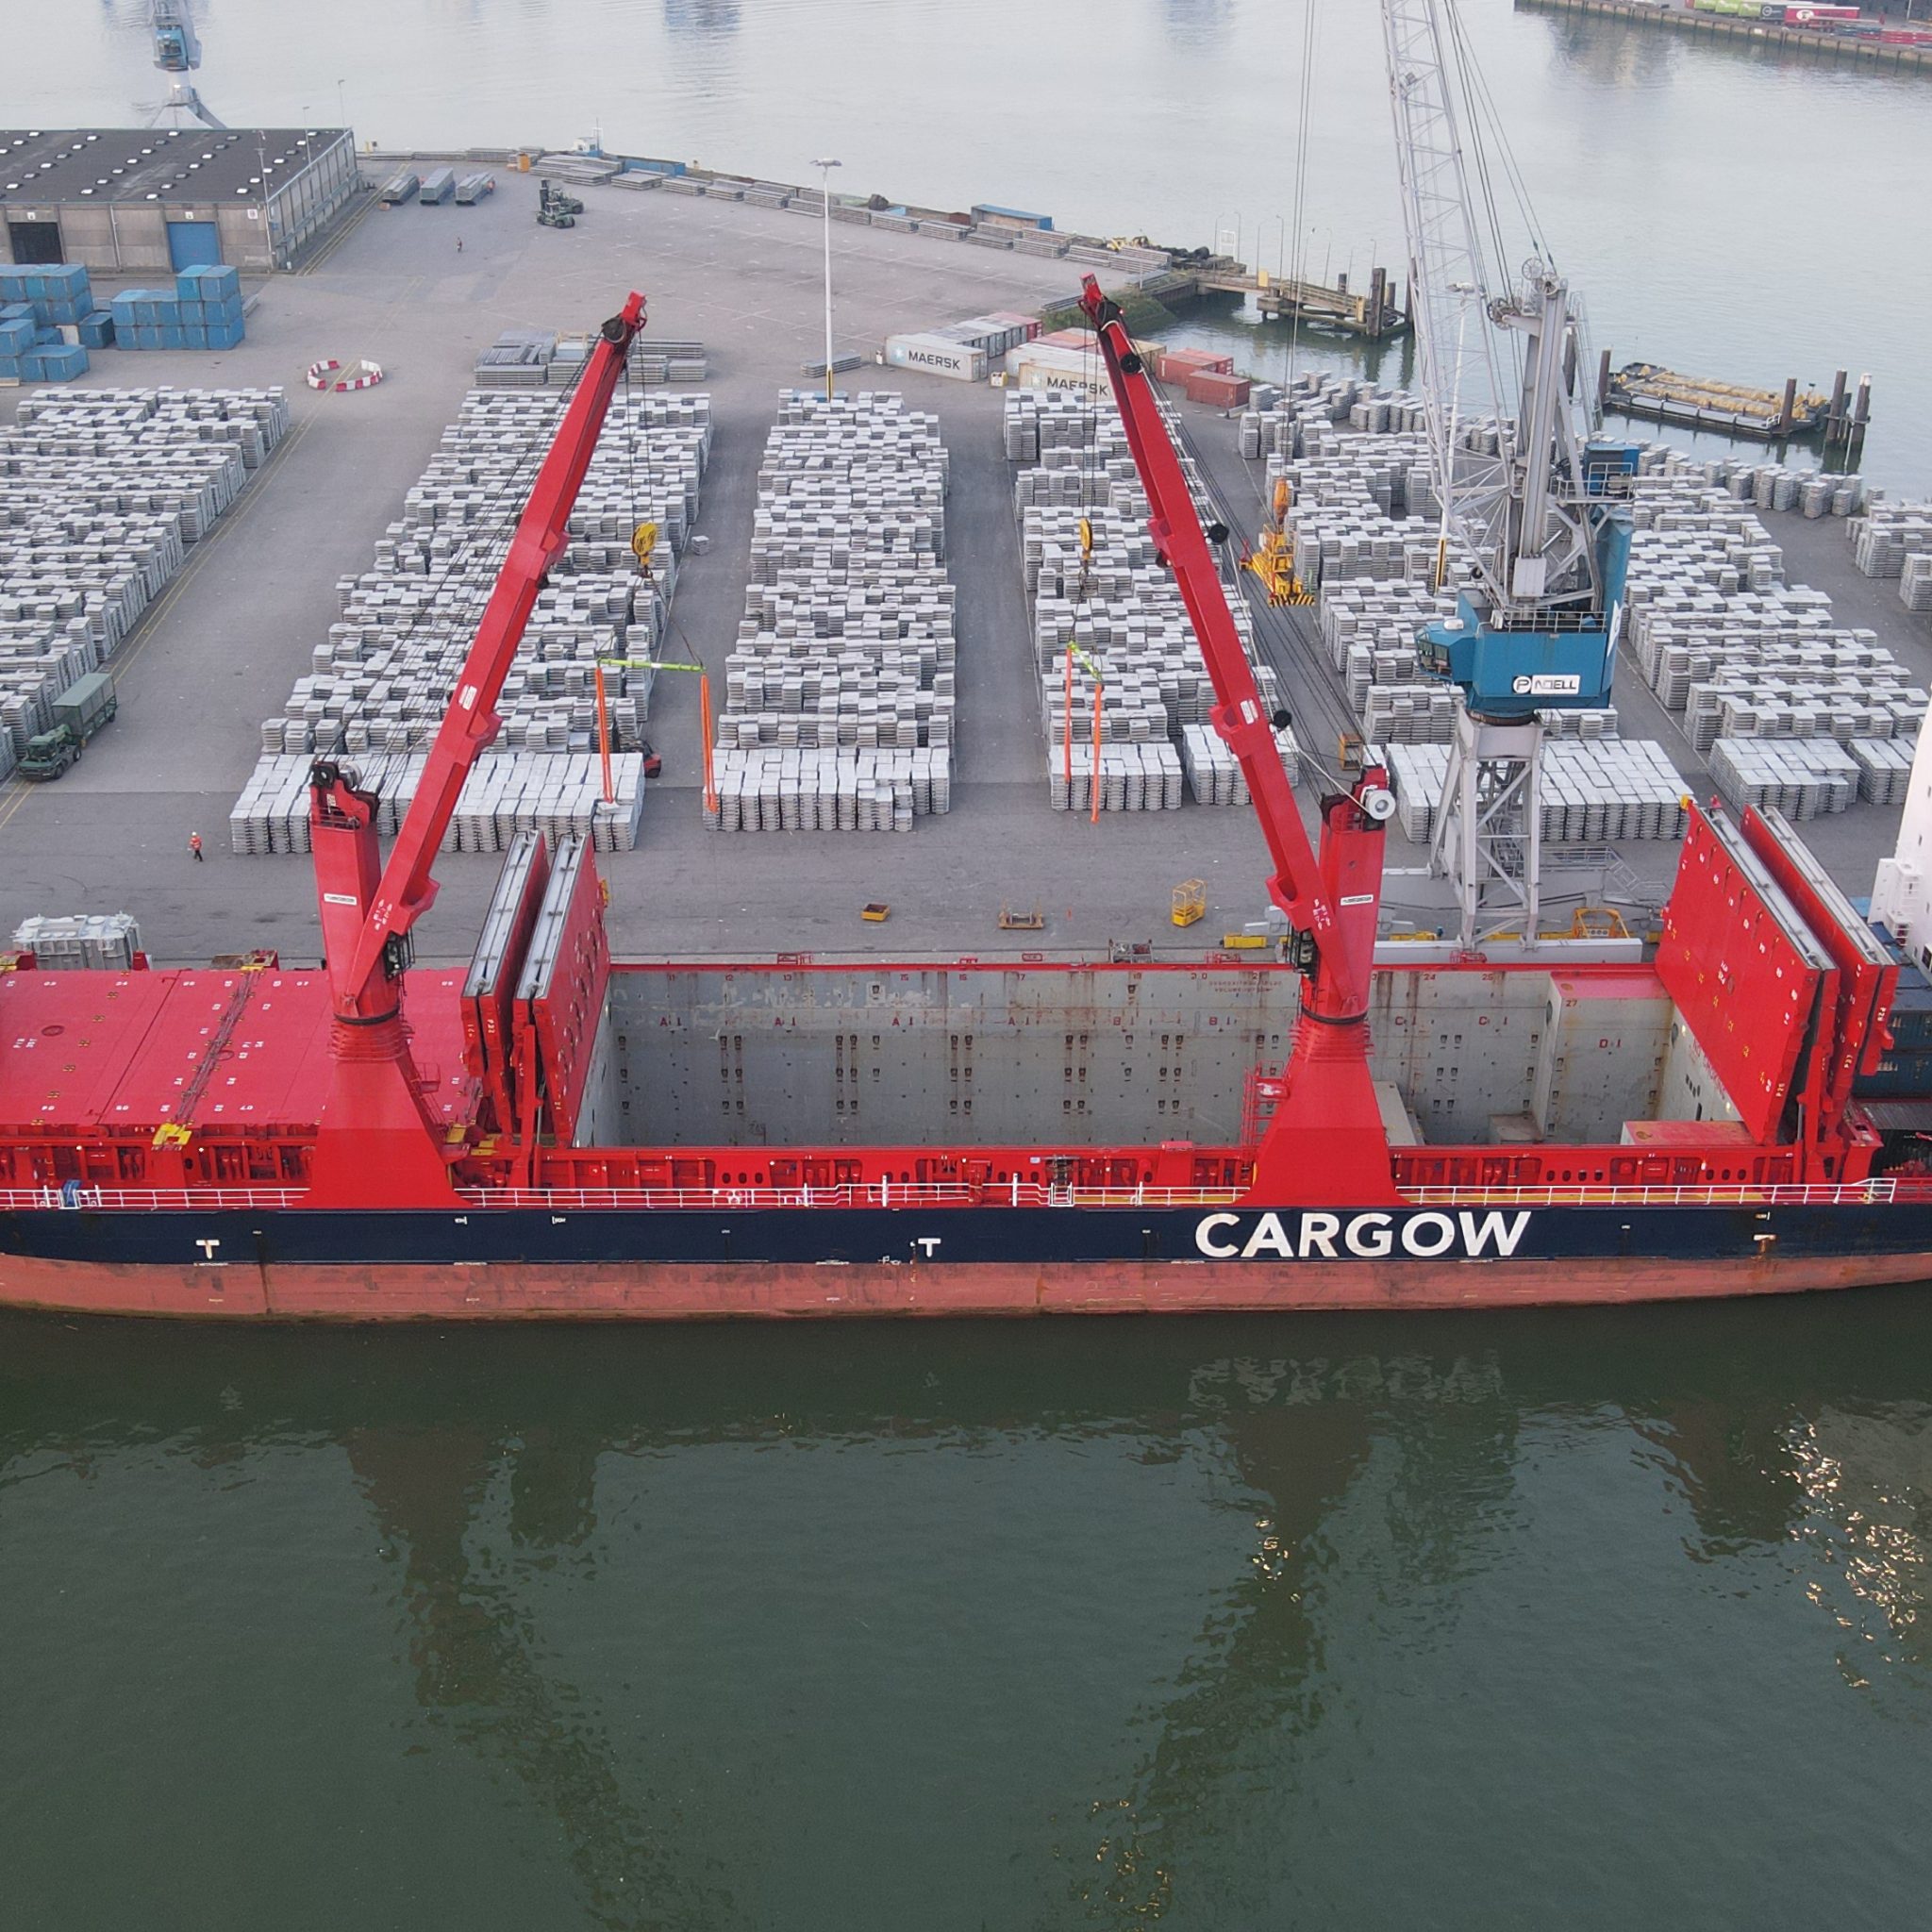 De schepen van Cargow krijgen een kleine aanpassing om mee te kunnen doen aan de proef. (Foto Port of Rotterdam)